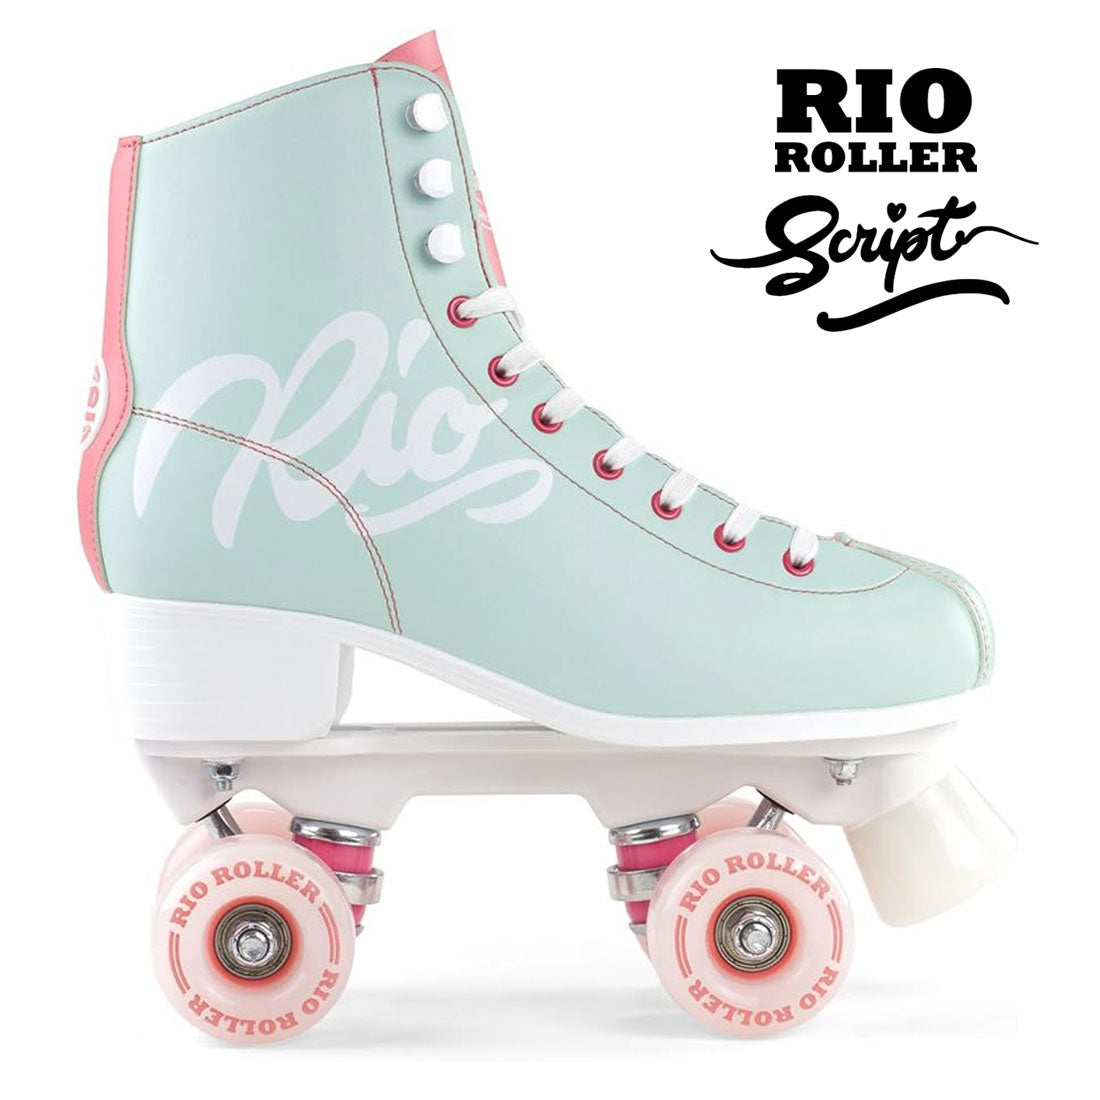 Rio Roller Script - Teal/Coral Roller Skates